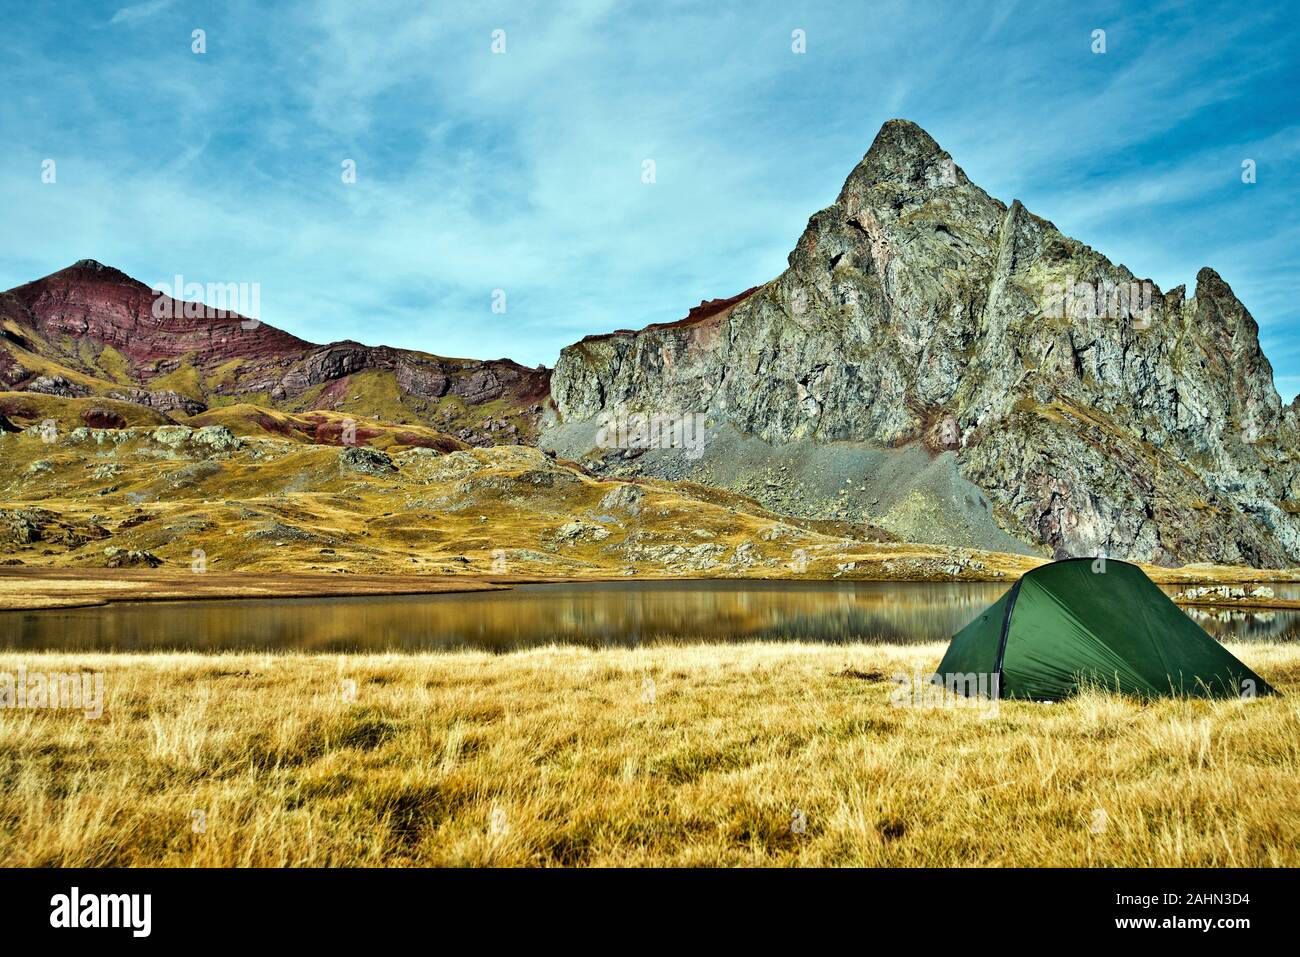 Anayet picco 2575 m e Vertice Anayet 2559 m a sinistra e la tenda nel confine del Lago di plateau di primo piano, Pirenei spagnoli, Aragona, Spagna Foto Stock